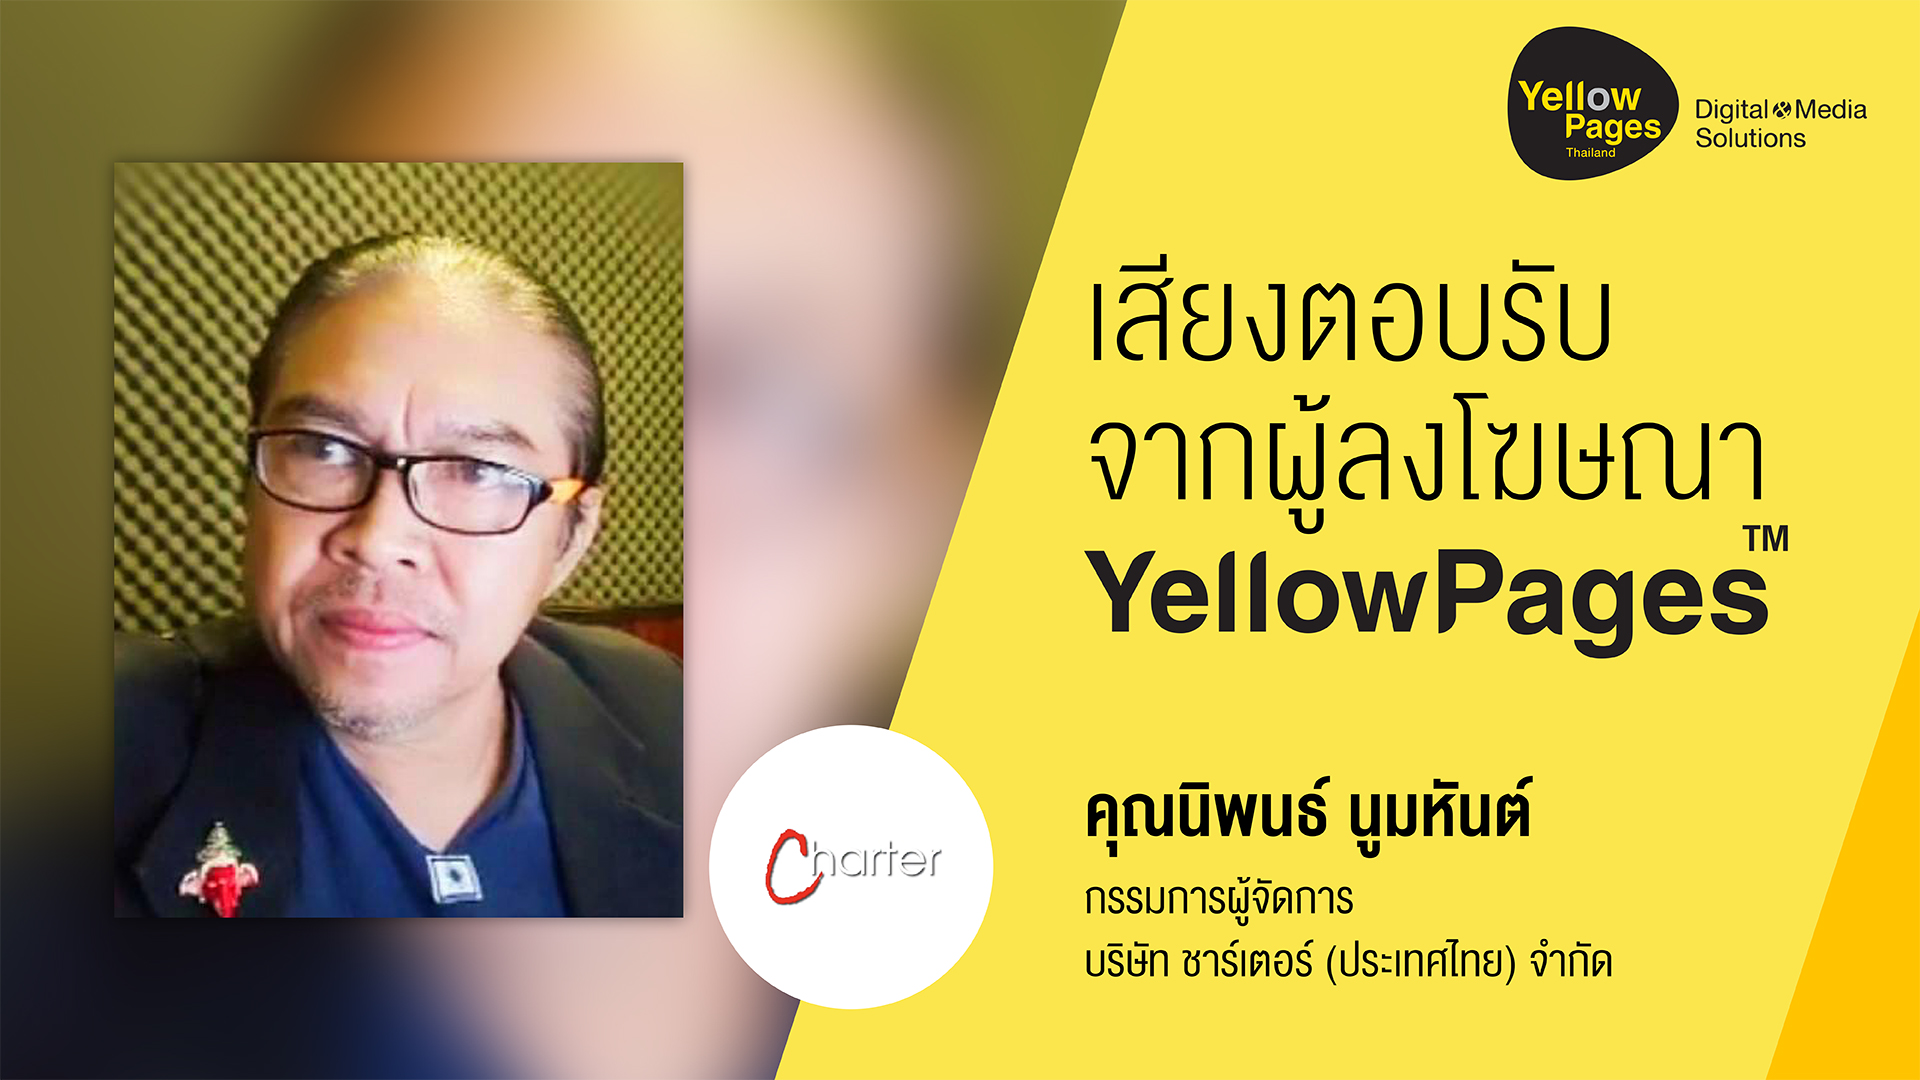 คุณ นิพนธ์ นูมหันต์ กรรมการผู้จัดการ บริษัท ชาร์เตอร์ (ประเทศไทย) จำกัด - ลงโฆษณากับ Thailand YellowPages